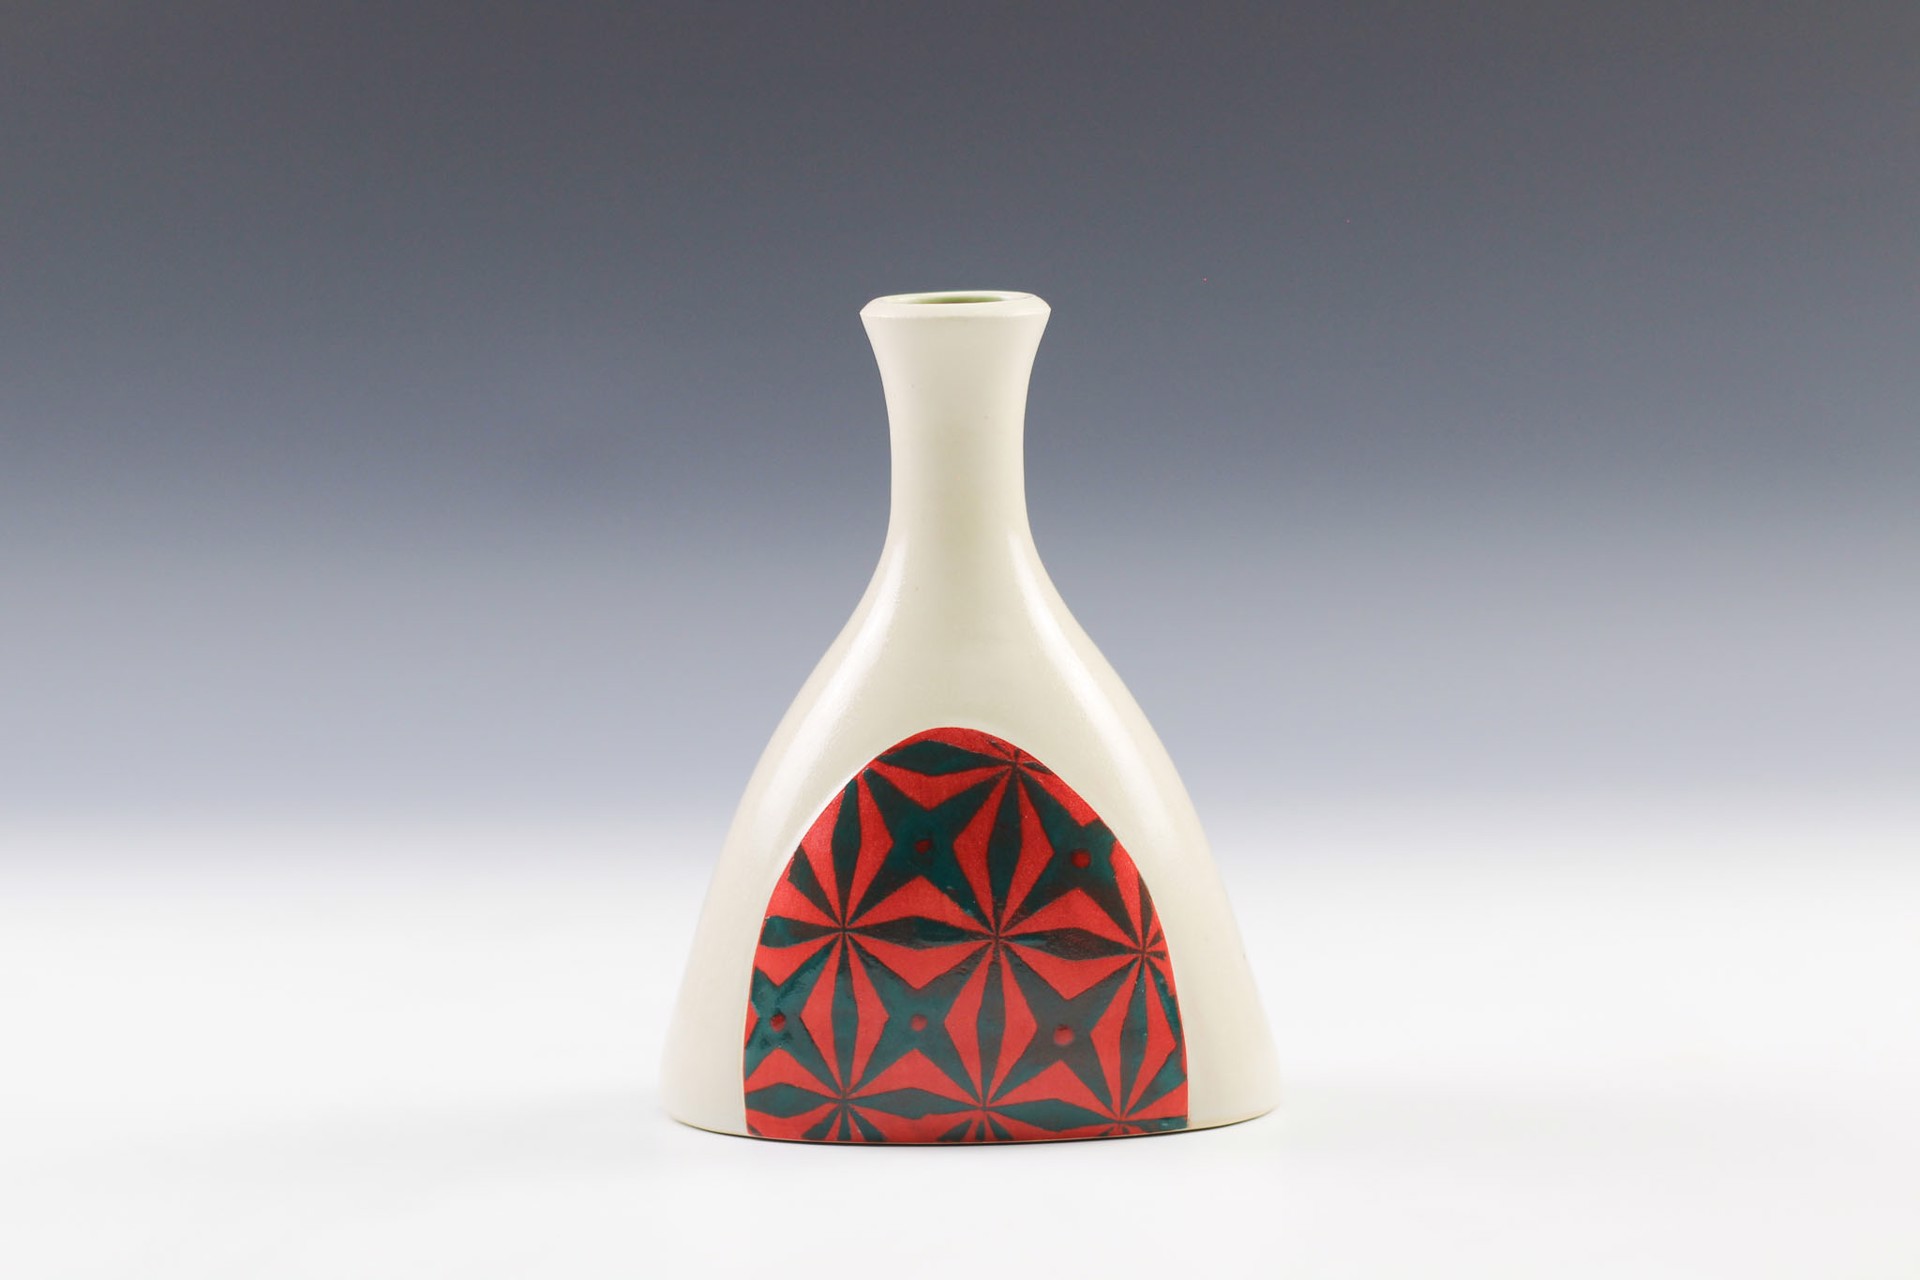 Vase by Rachelle Miller